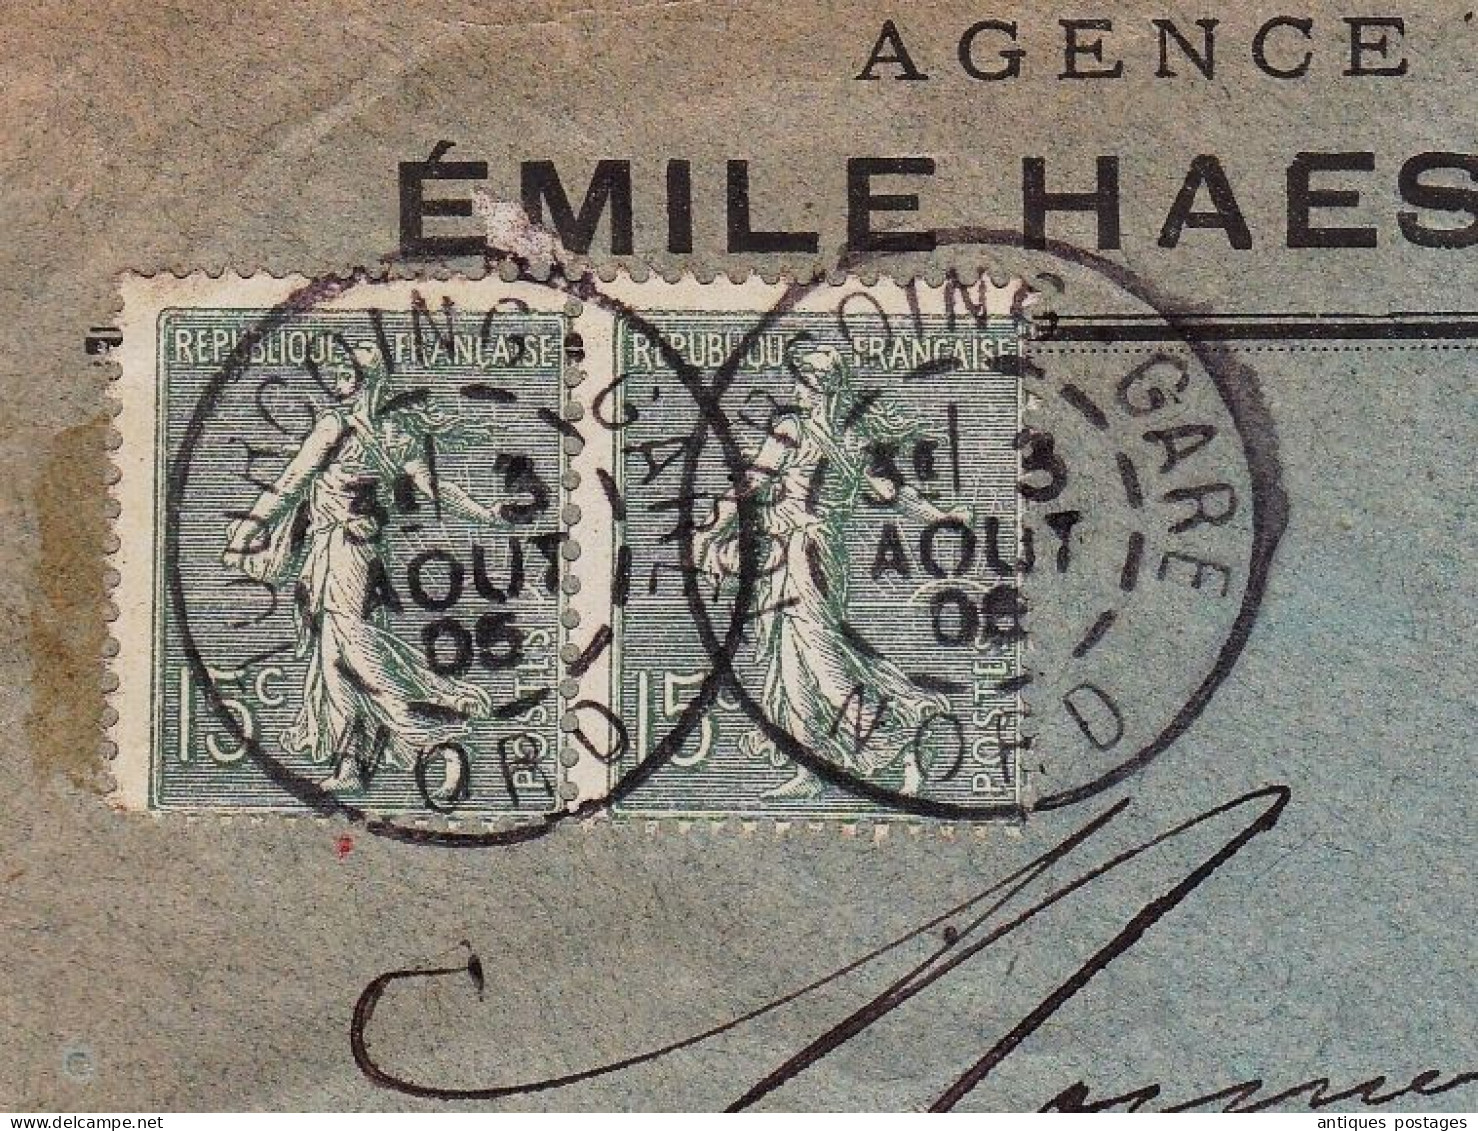 Lettre 1905 Tourcoing Gare Emile Haese Agence Immobilière Paire Semeuse Lignée 15 Centimes - 1903-60 Semeuse Lignée